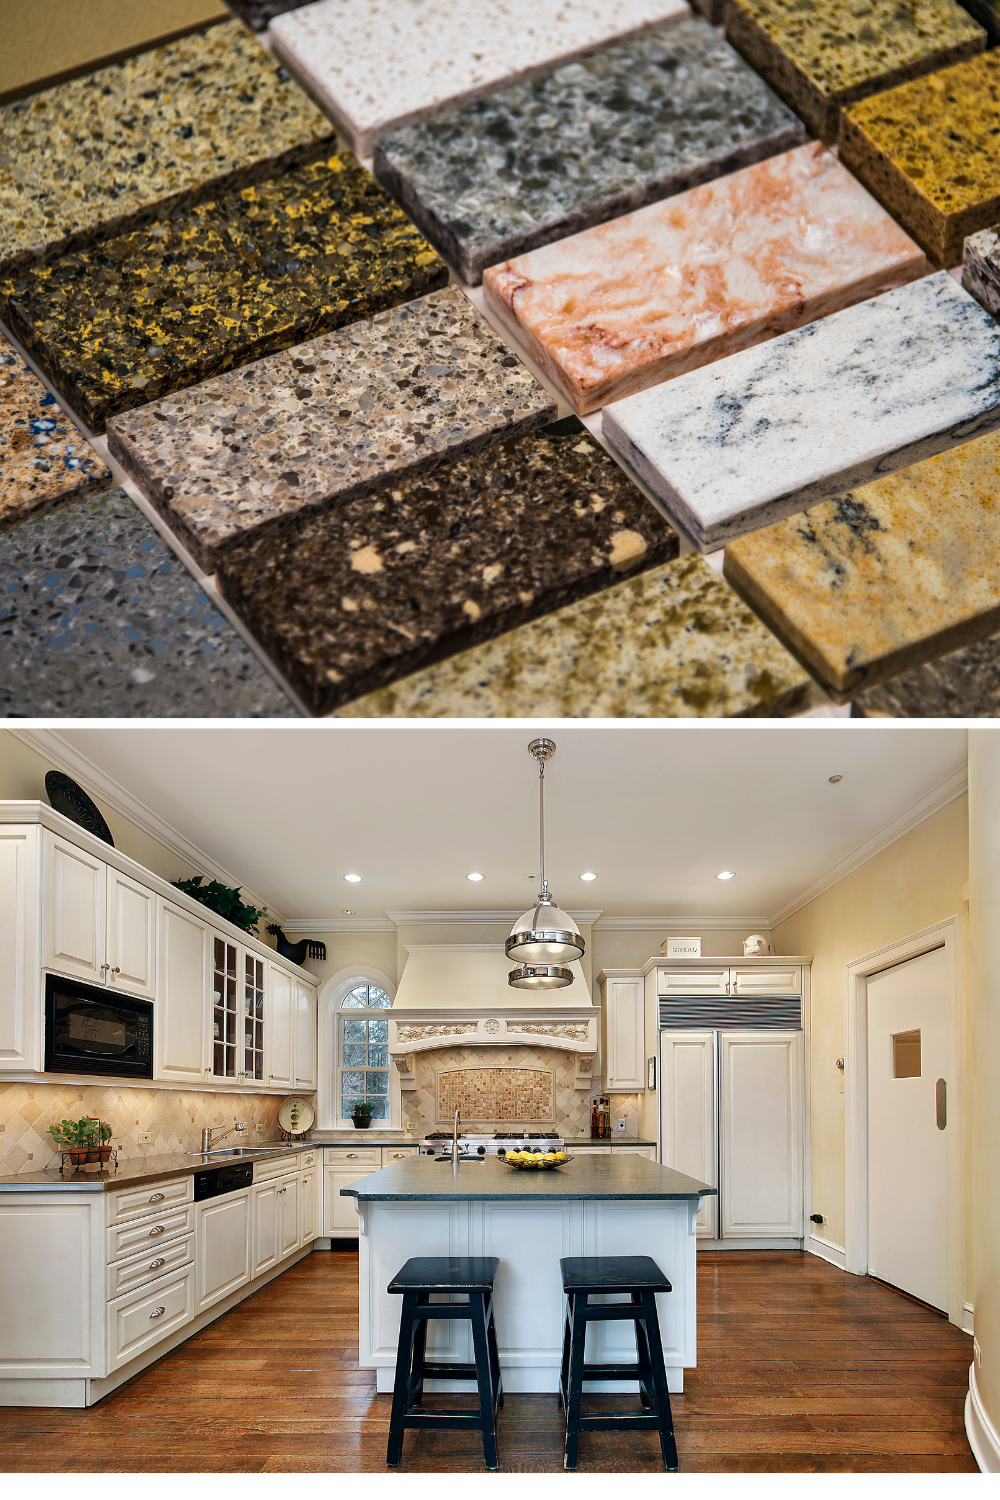 Natural Stone or Granite Kitchen Backsplash